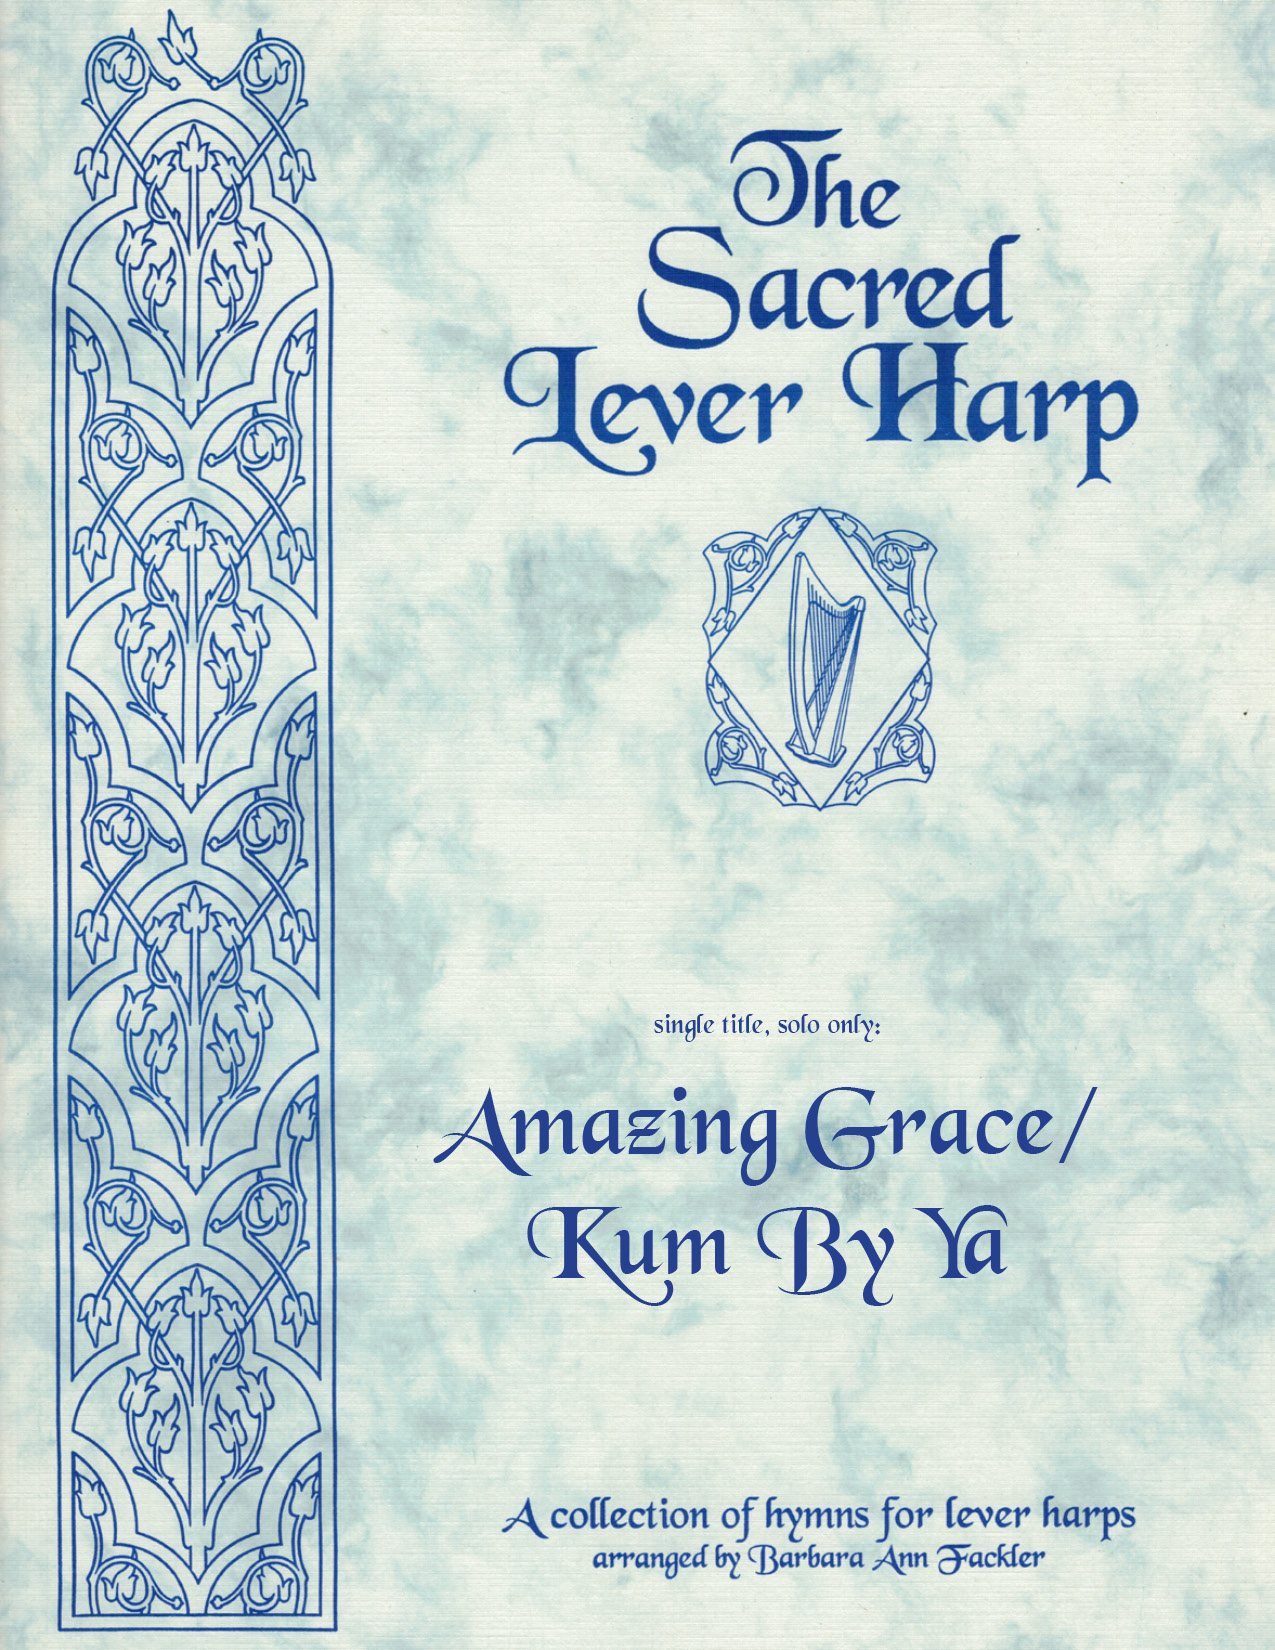 Amazing Grace/Kum Ba Ya, sheet music by Barbara Ann Fackler